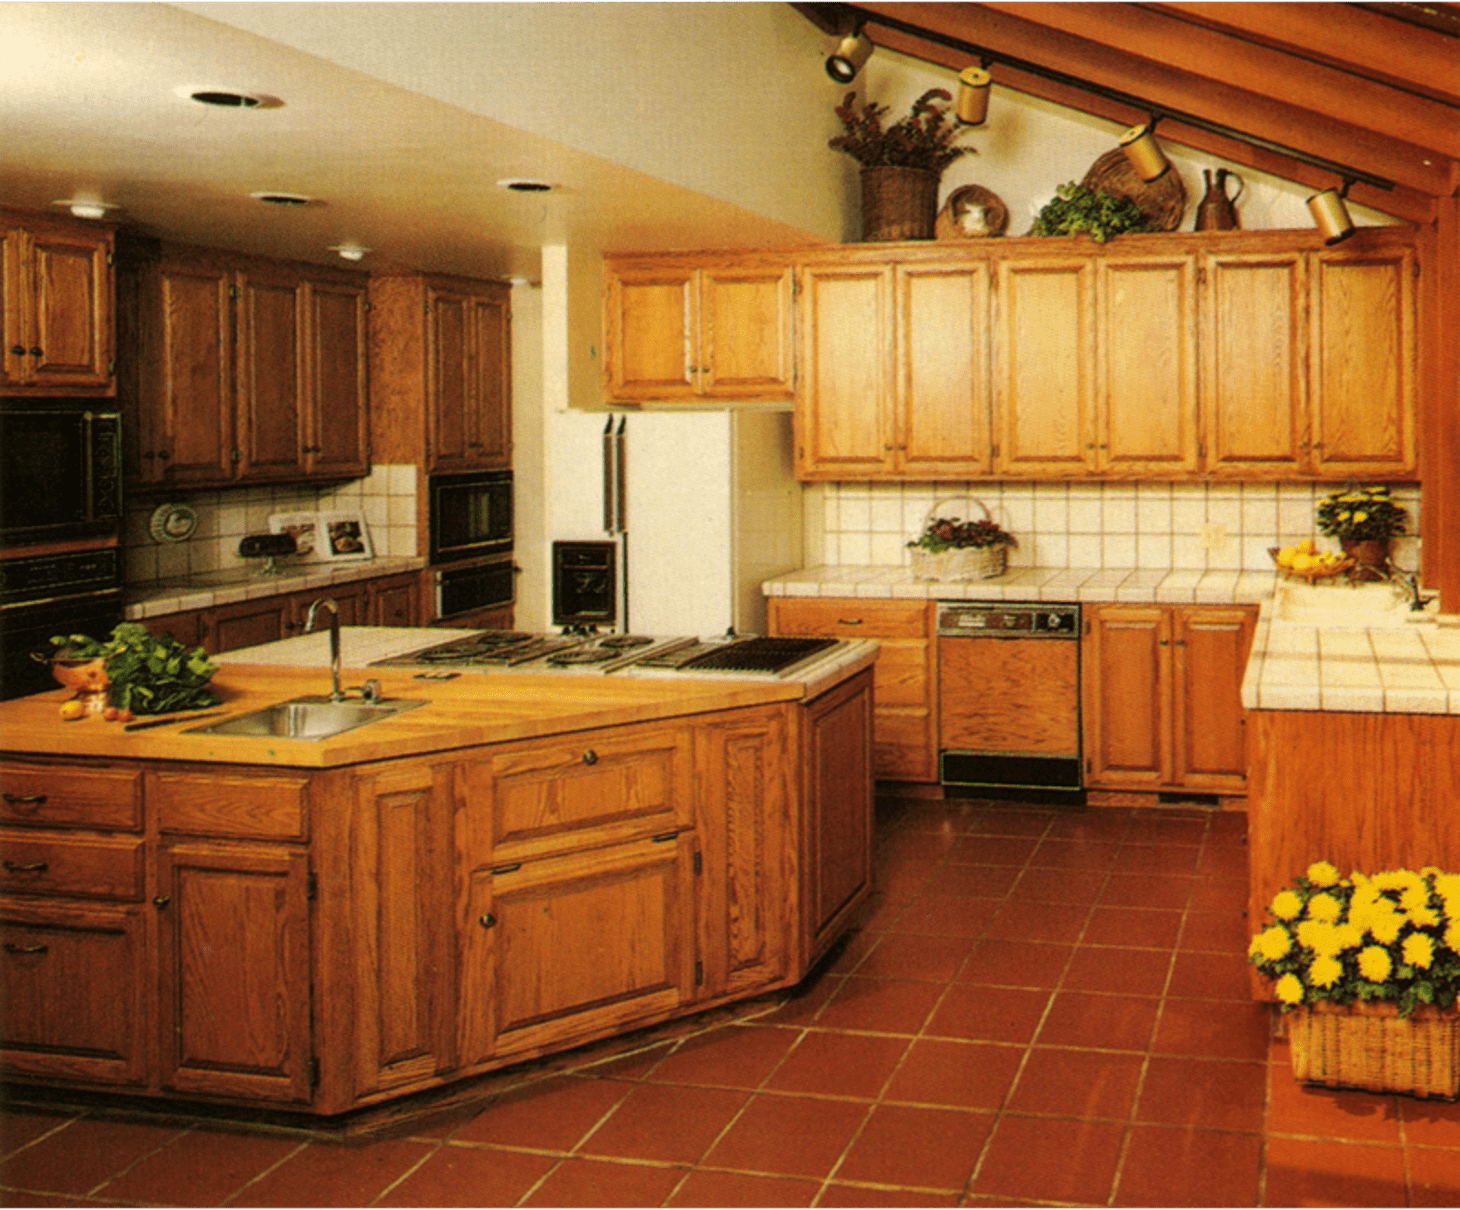 80 sq ft kitchen design